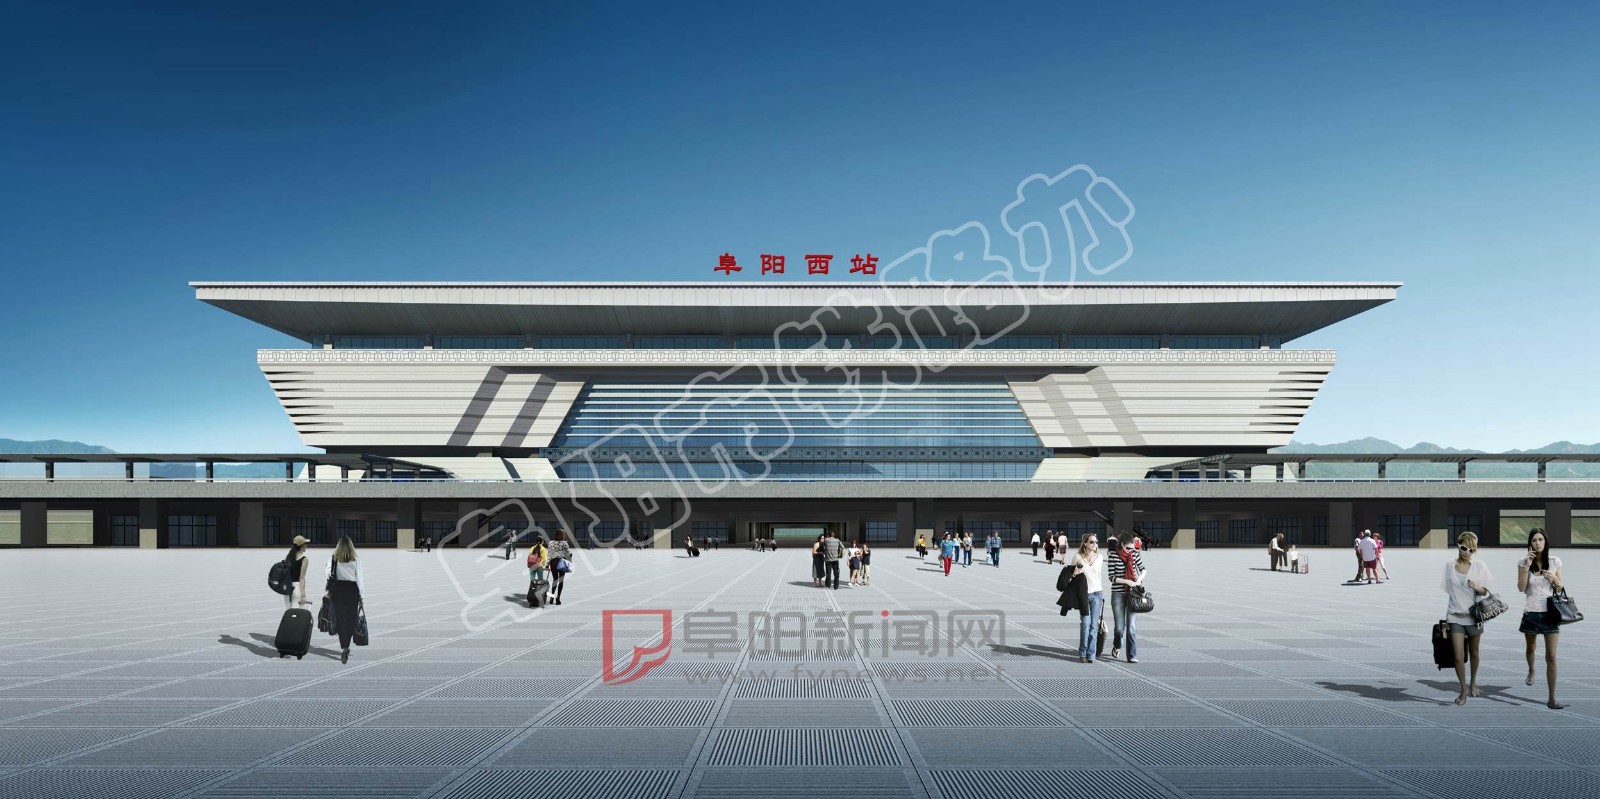 站房规模 按照审批情况, 阜阳西站高架站房 建筑面积近期为